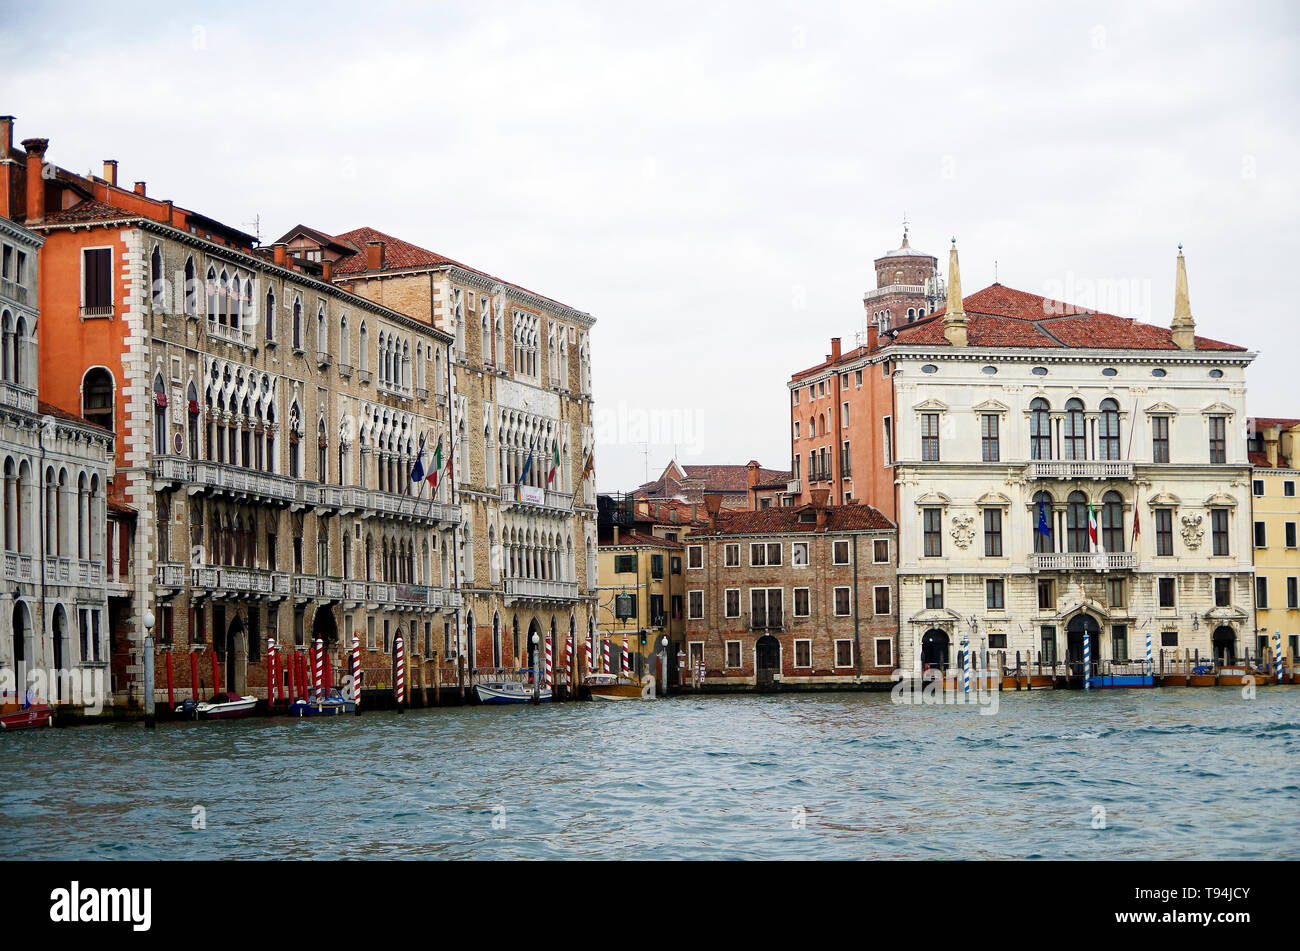 Grand Canal Venise, trois grands palais gothiques C15, les deux palais Giustinian & la Ca' Foscari et le début du Baroque Palazzo Balbi Banque D'Images